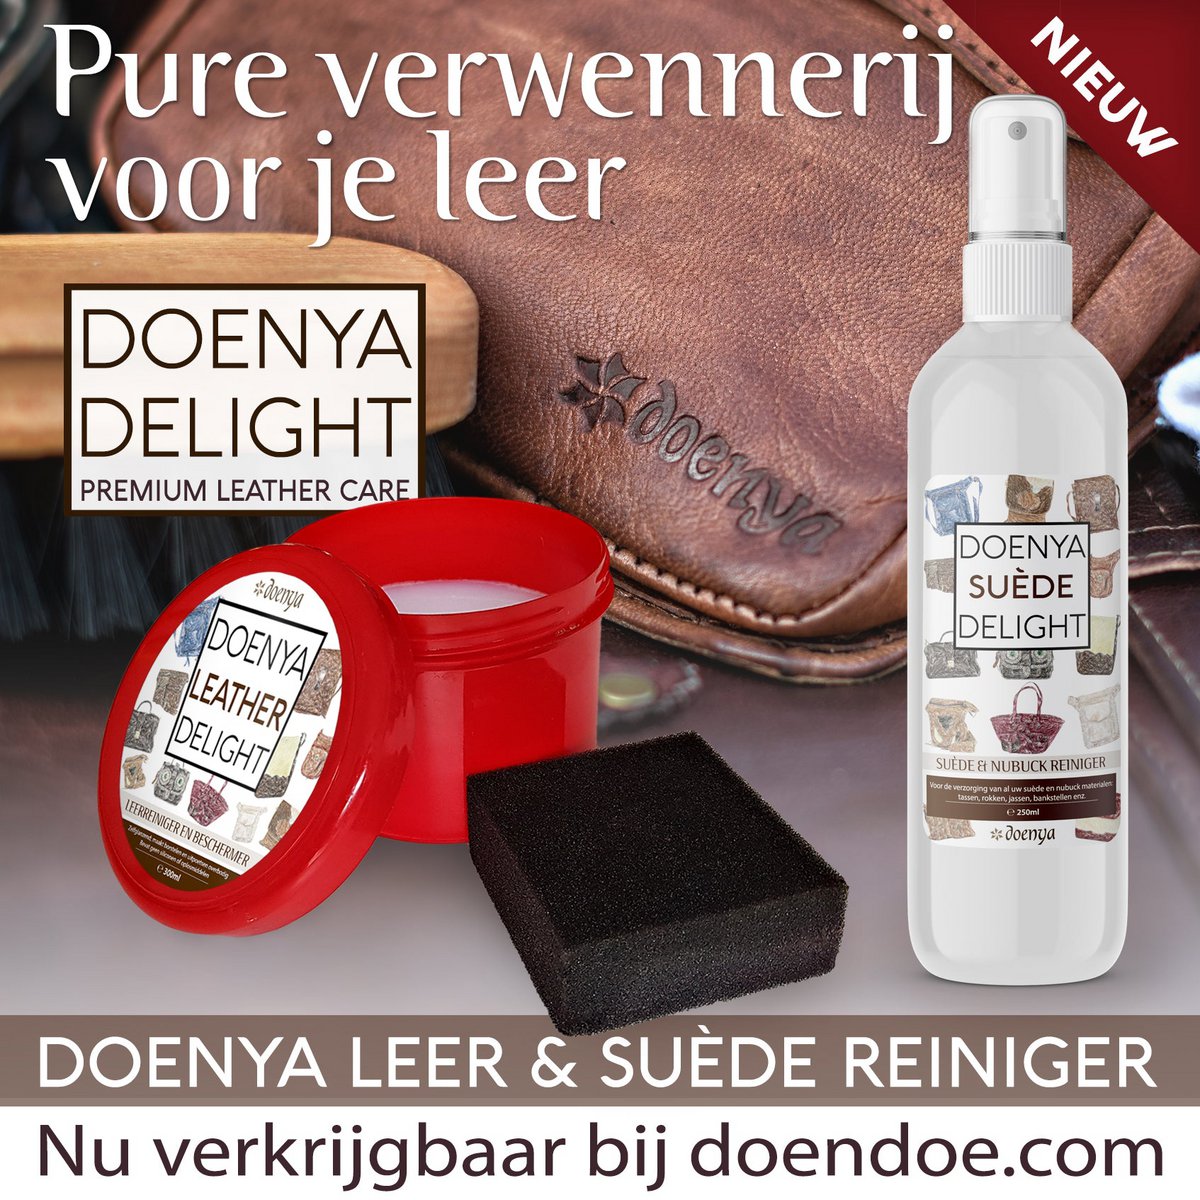 Doenya Suede Delight – WILDLEDERREINIGER der beste Reiniger für alle Wildleder- und Nubukmaterialien